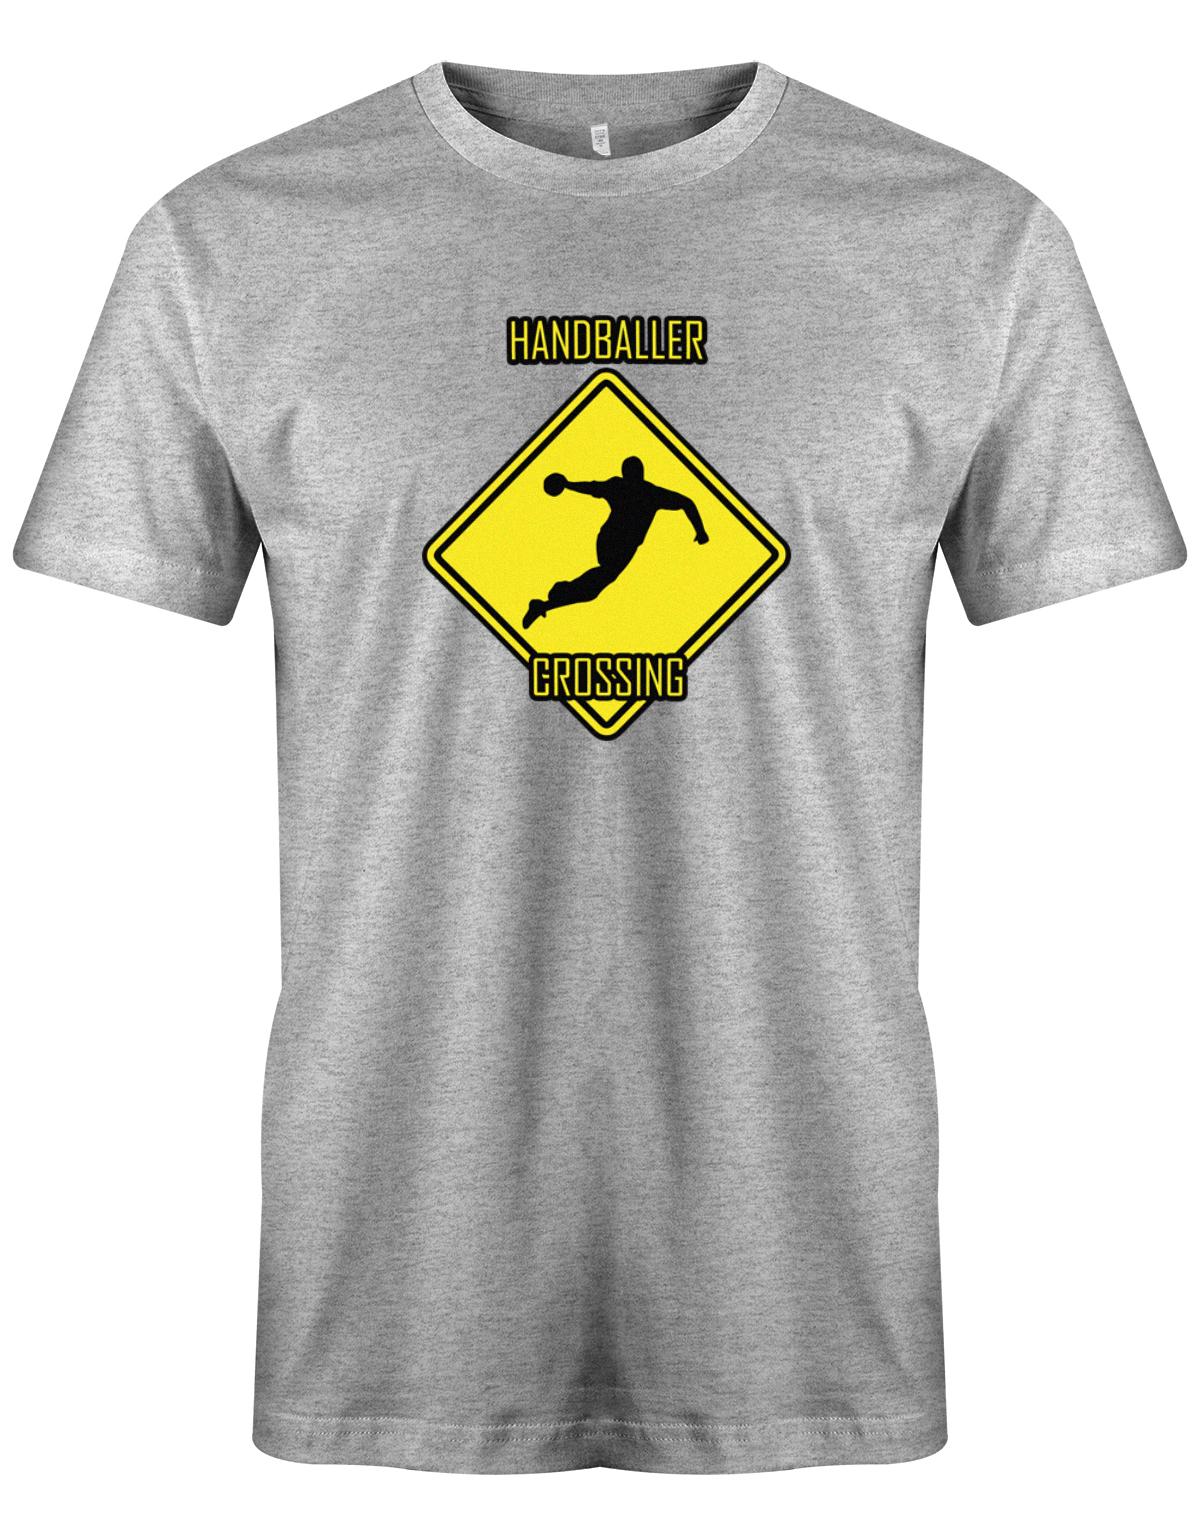 HAndballer-Crossing-Handball-Shirt-Herren-grau